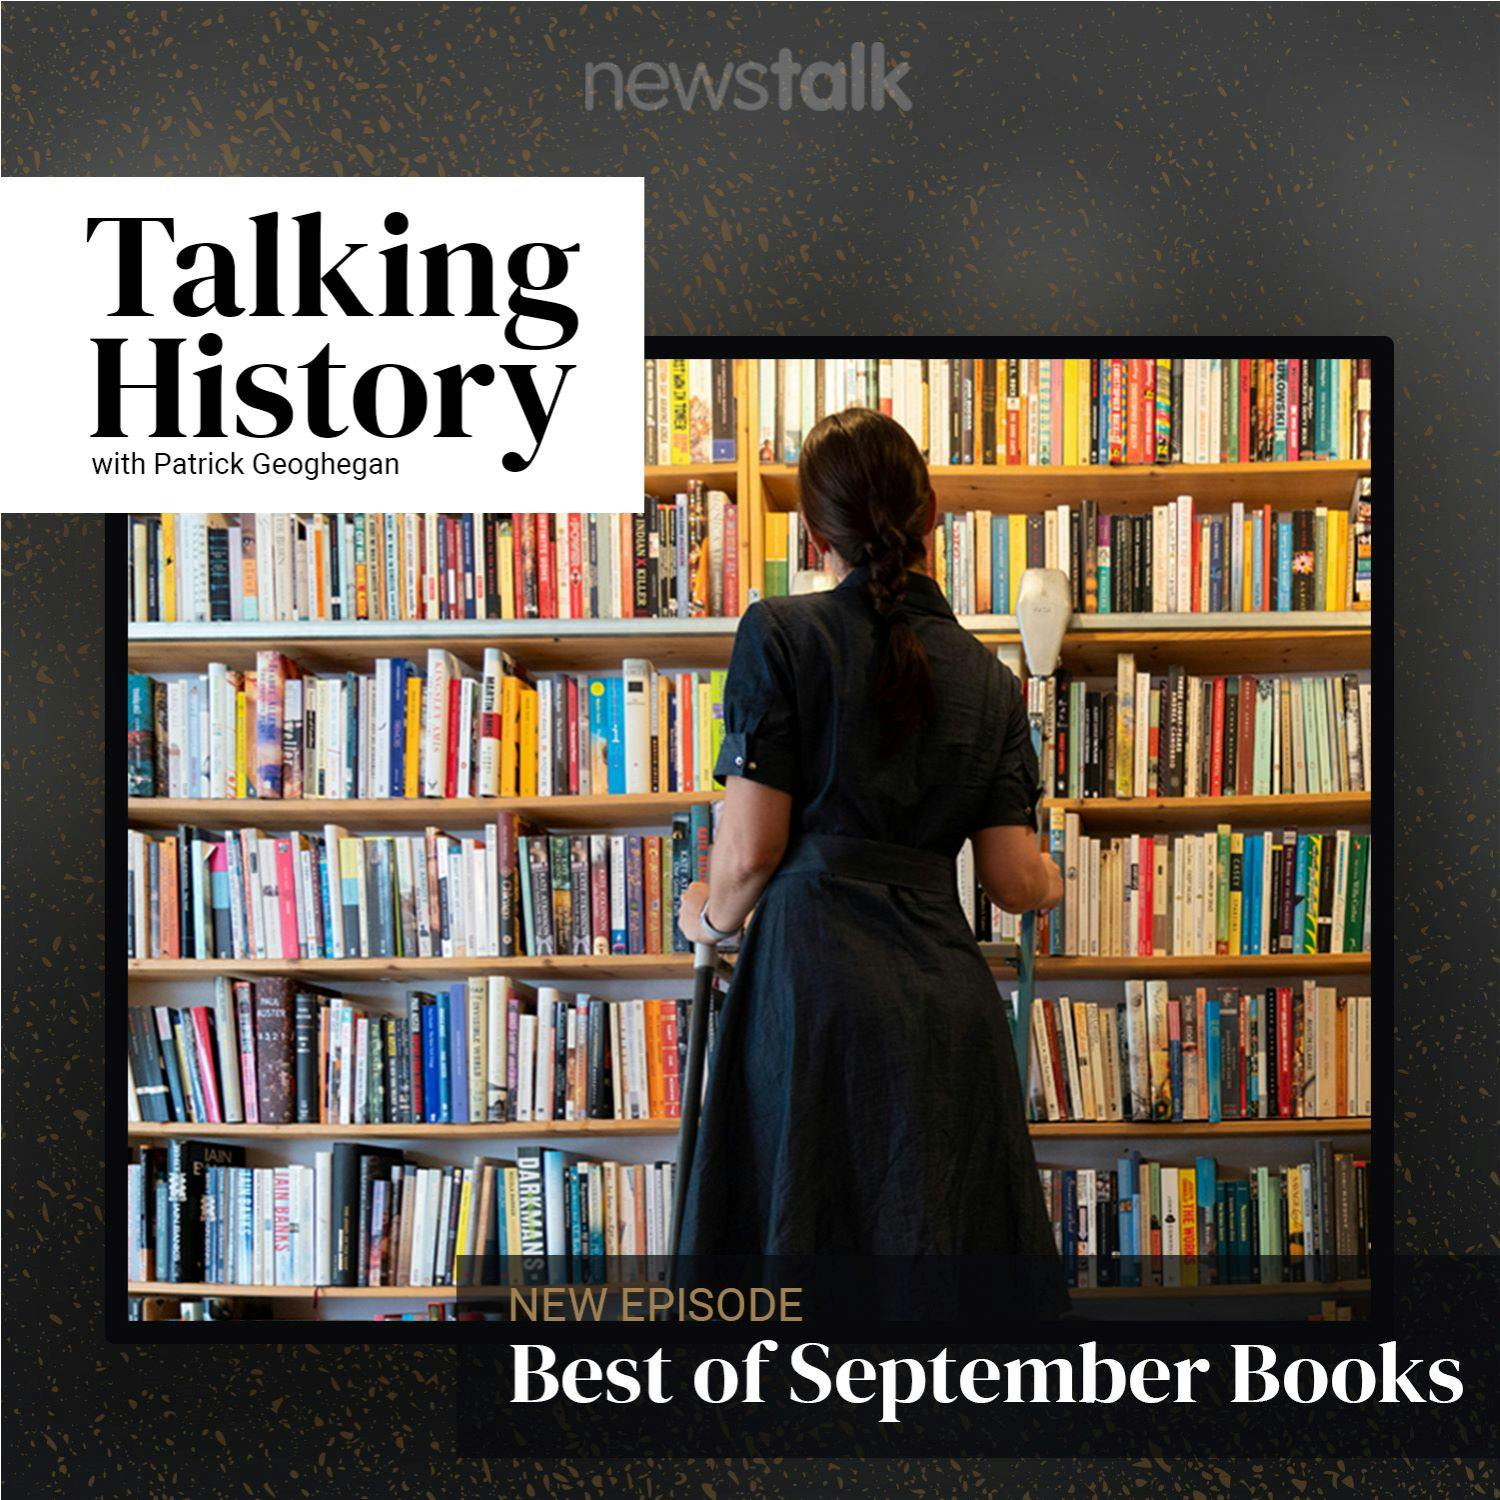 Best of September Books